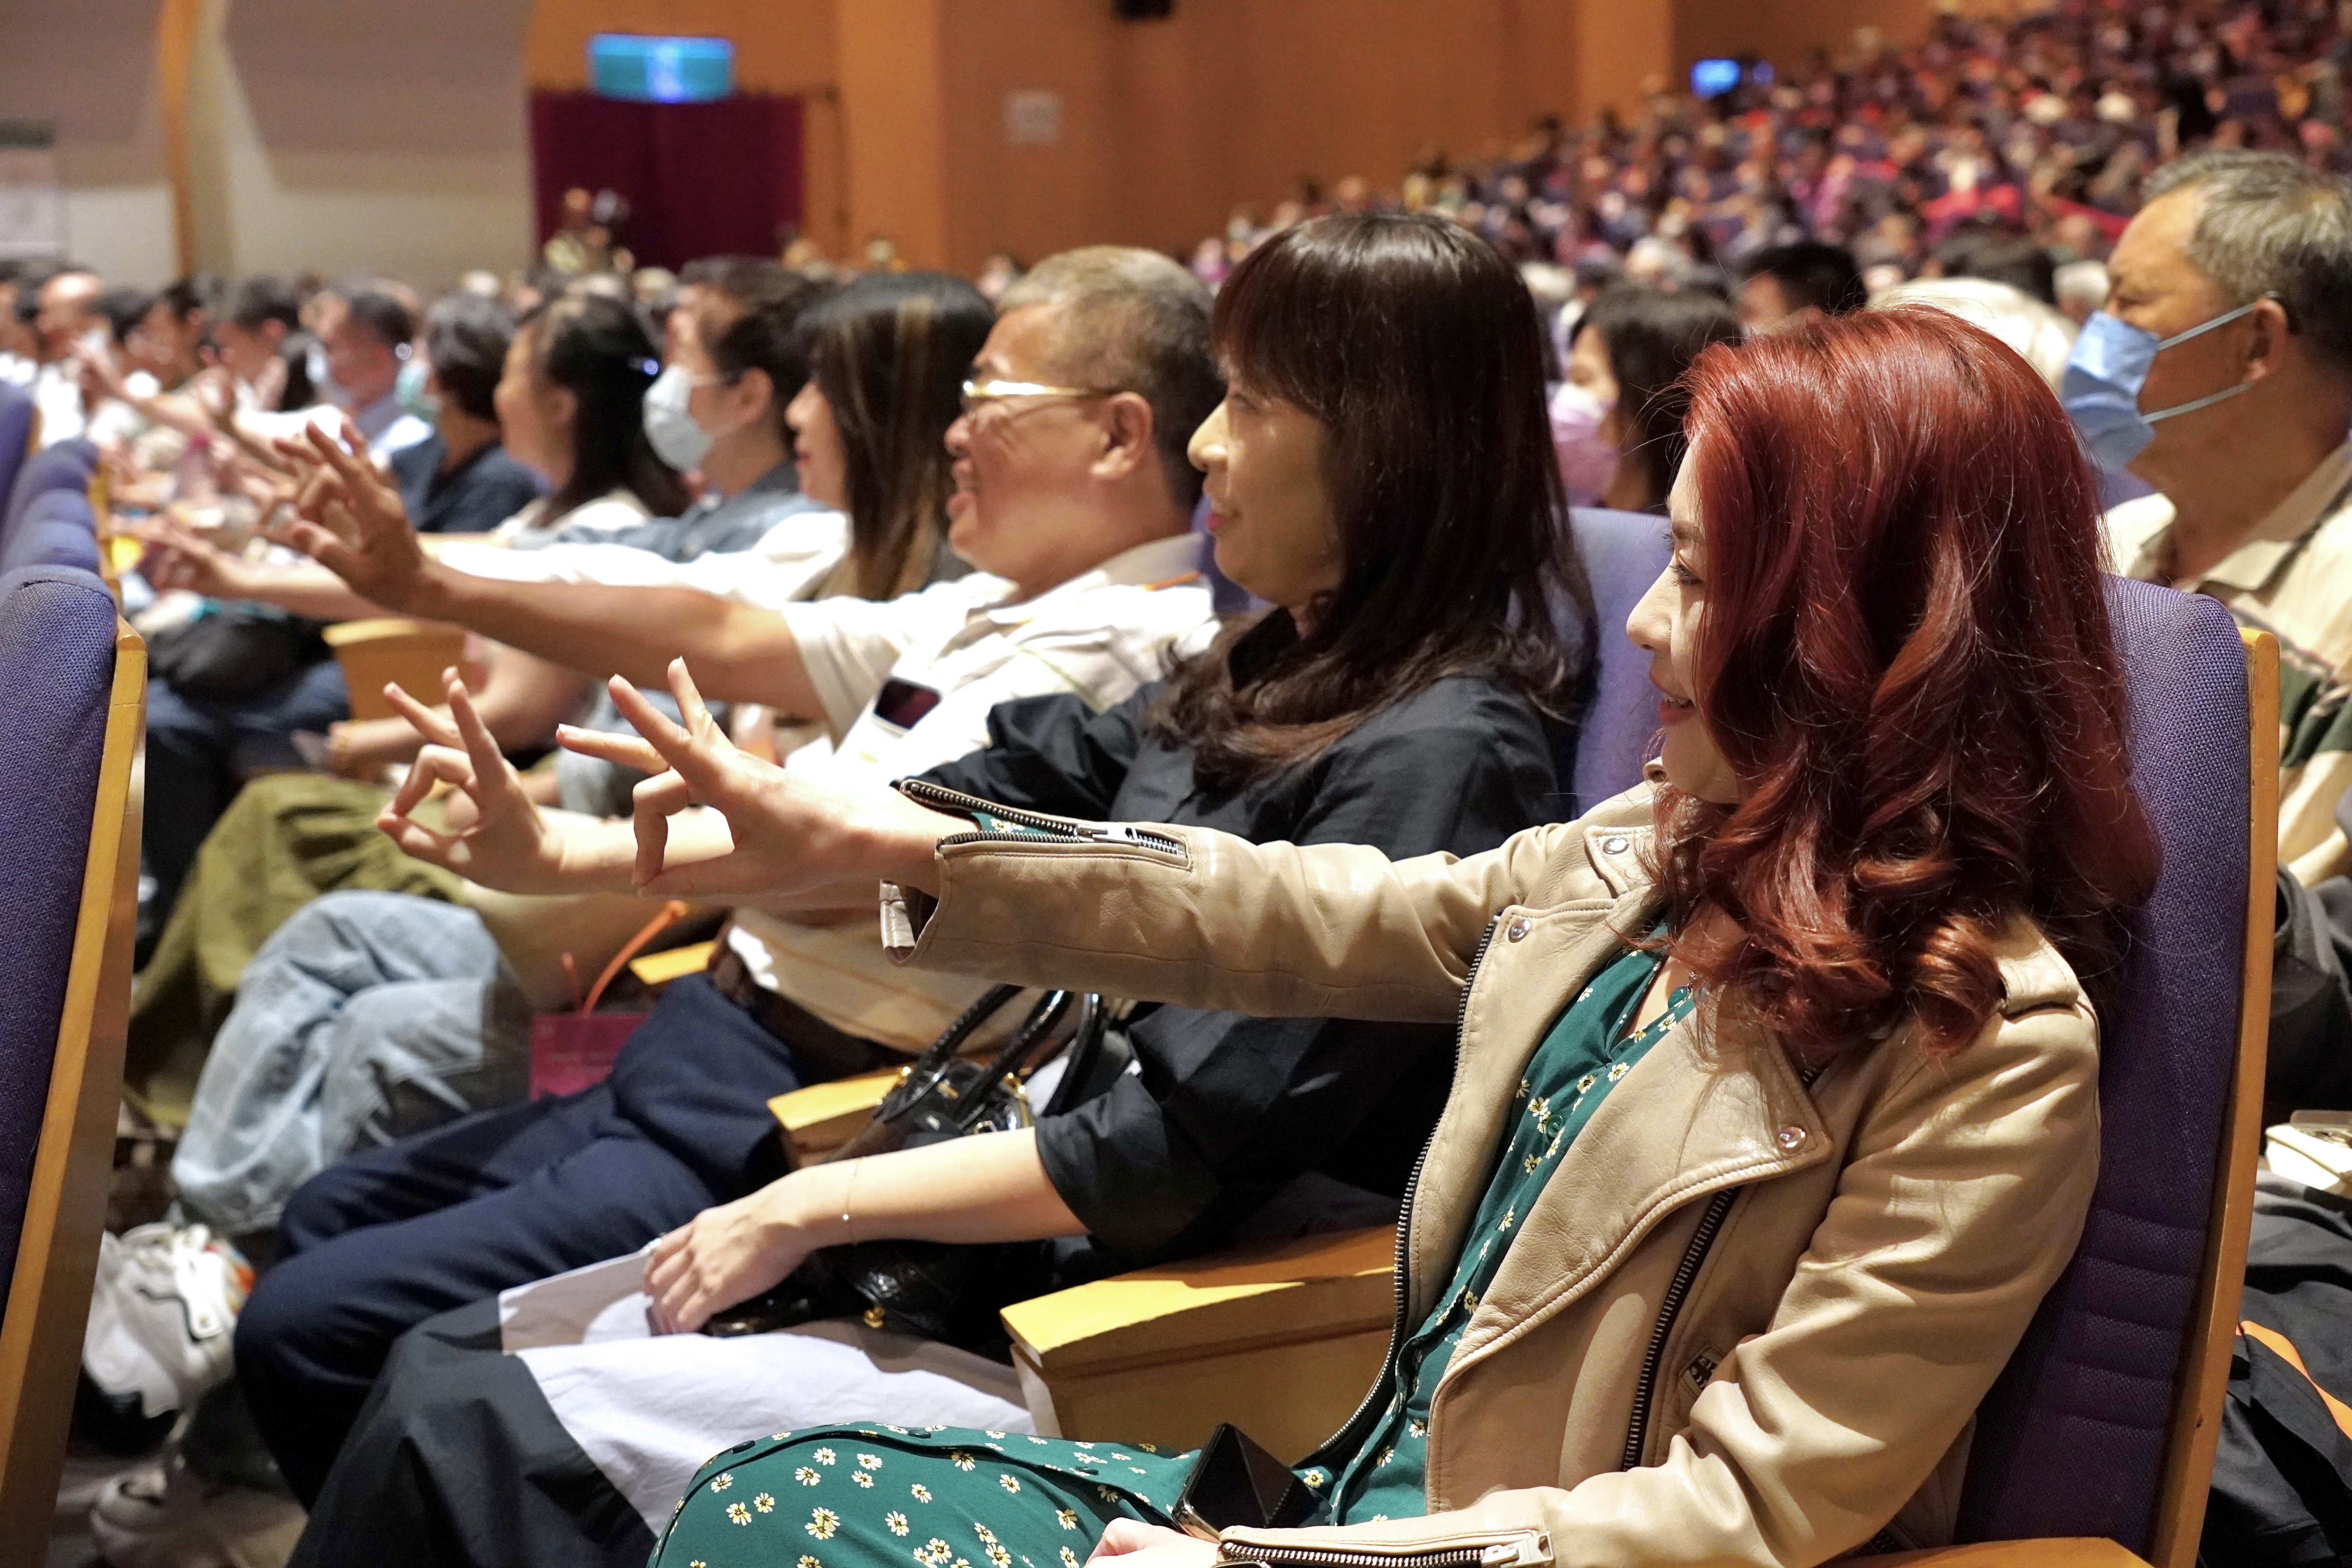 表演開始前，主持人與觀眾互動，教學京劇戲曲手勢。